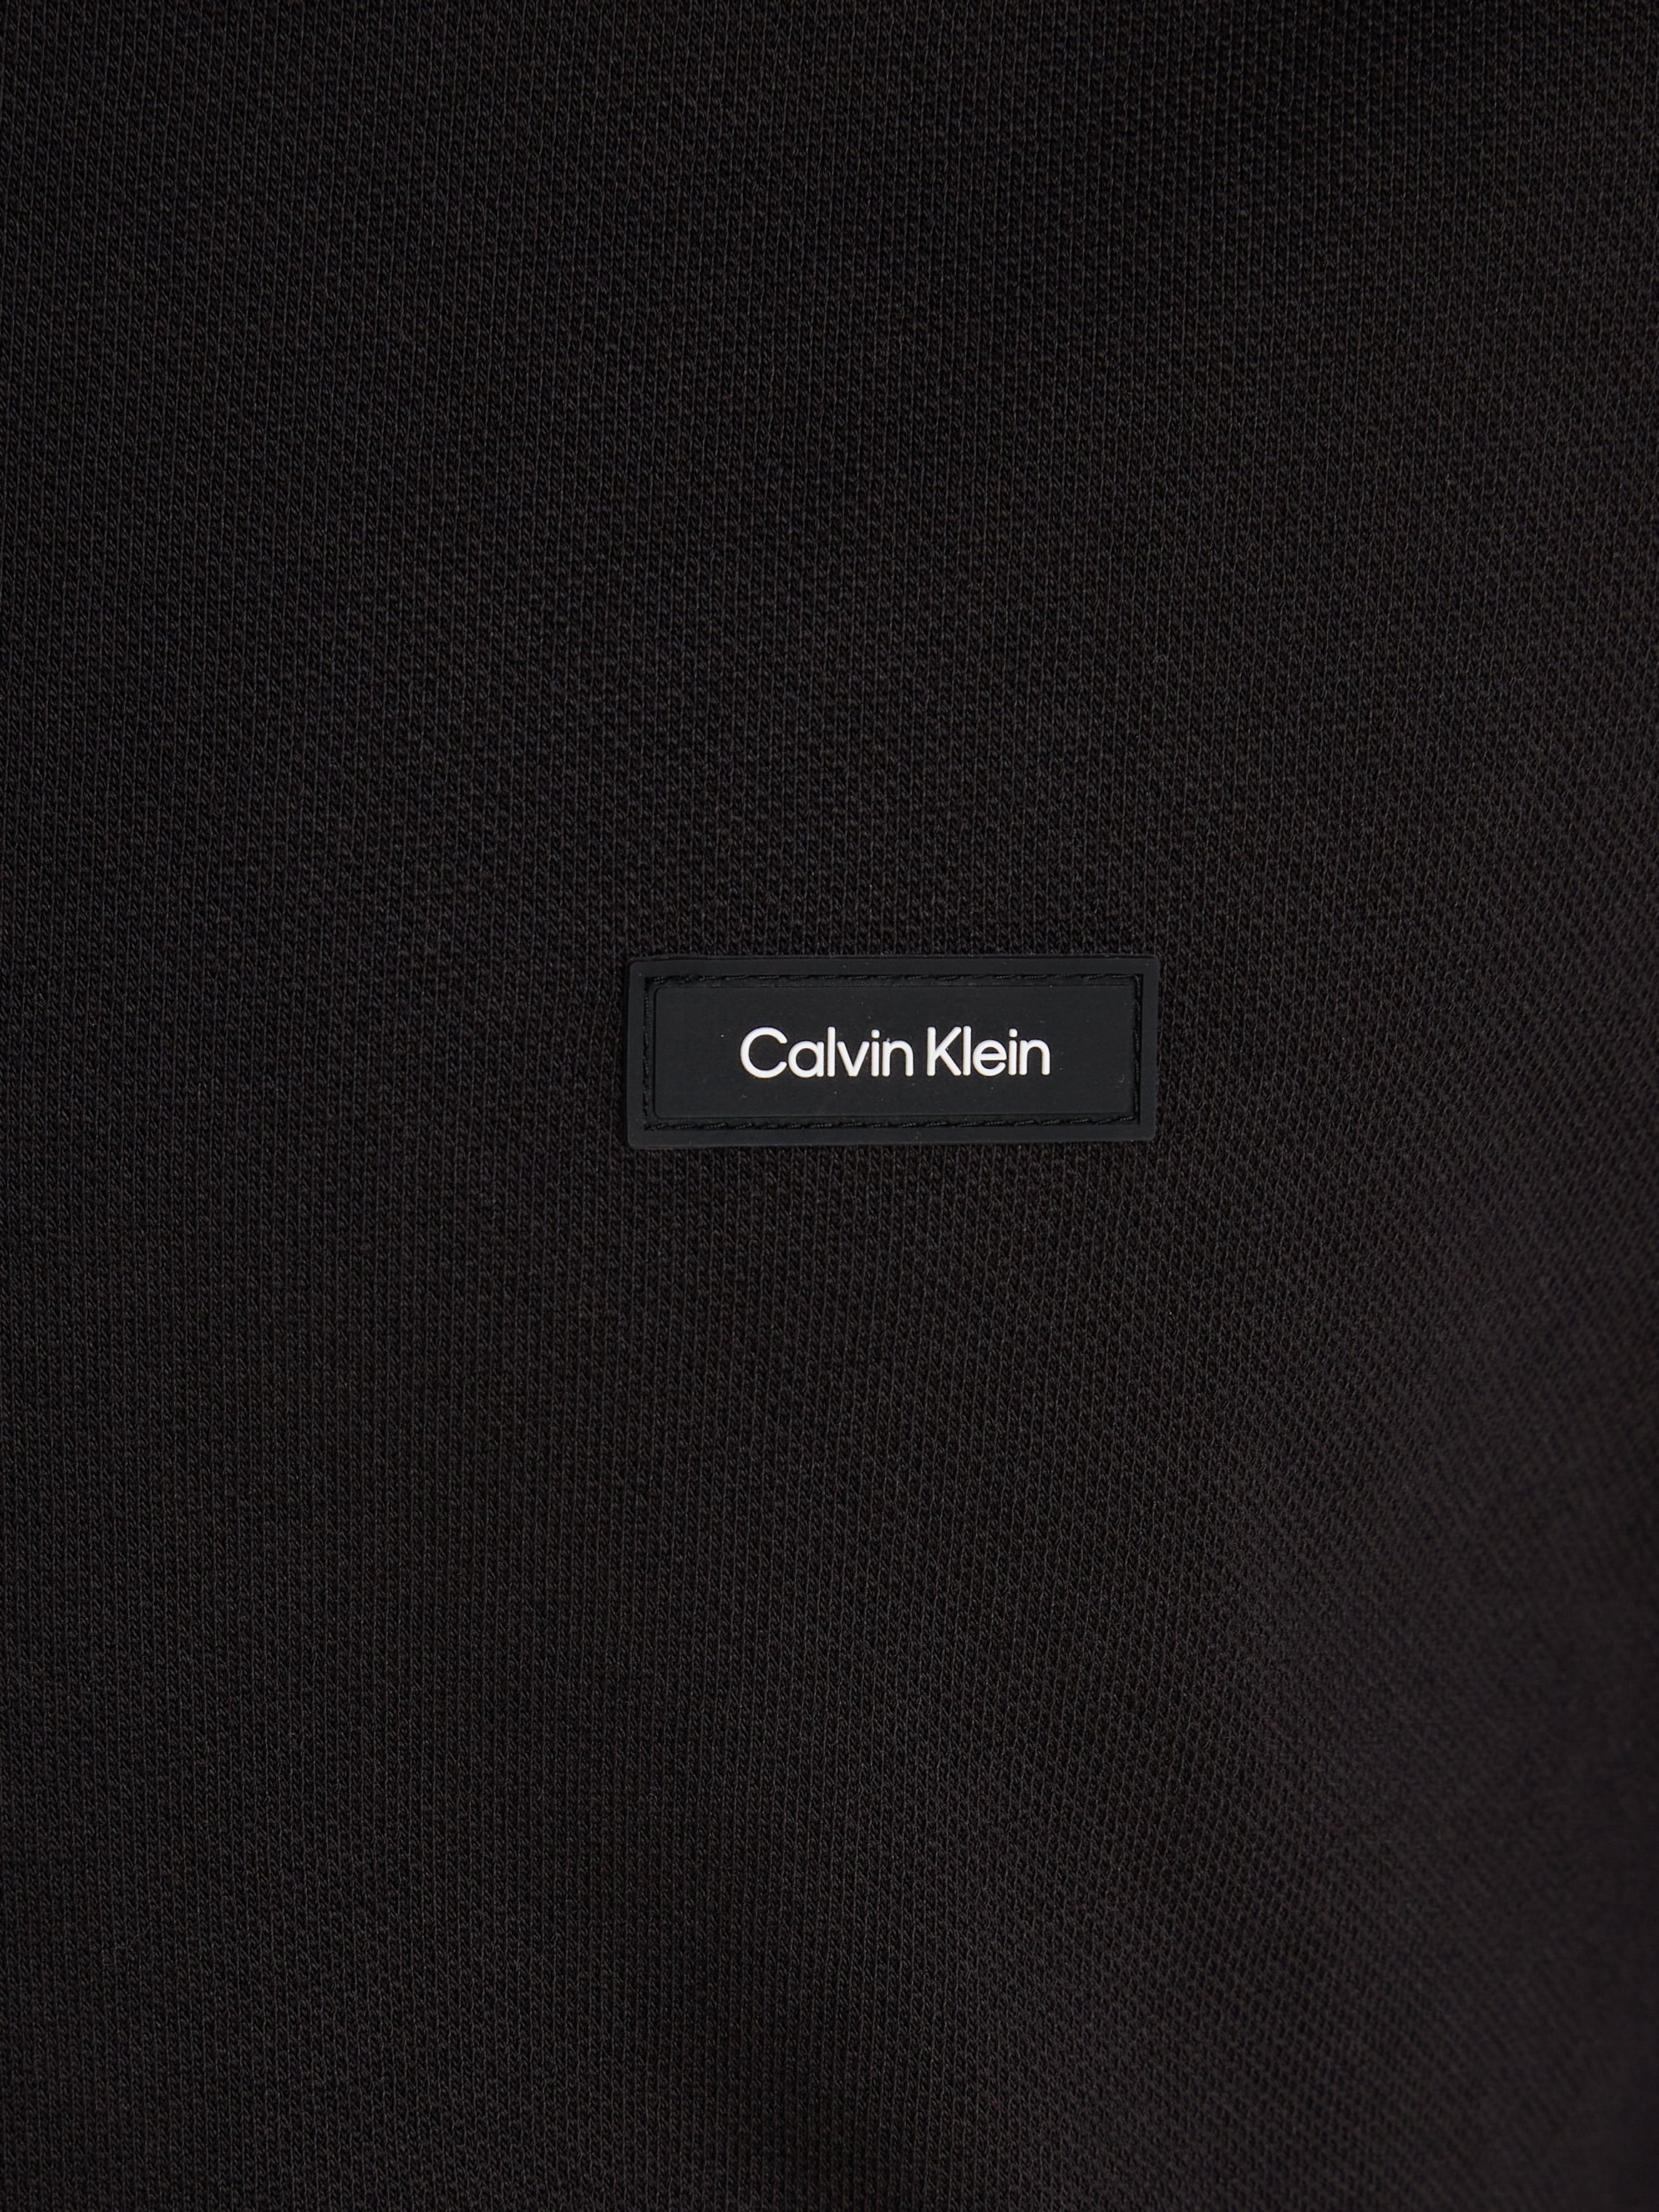 Ck Calvin STRETCH POLO LS PIQUE TIPPING Klein Poloshirt Black